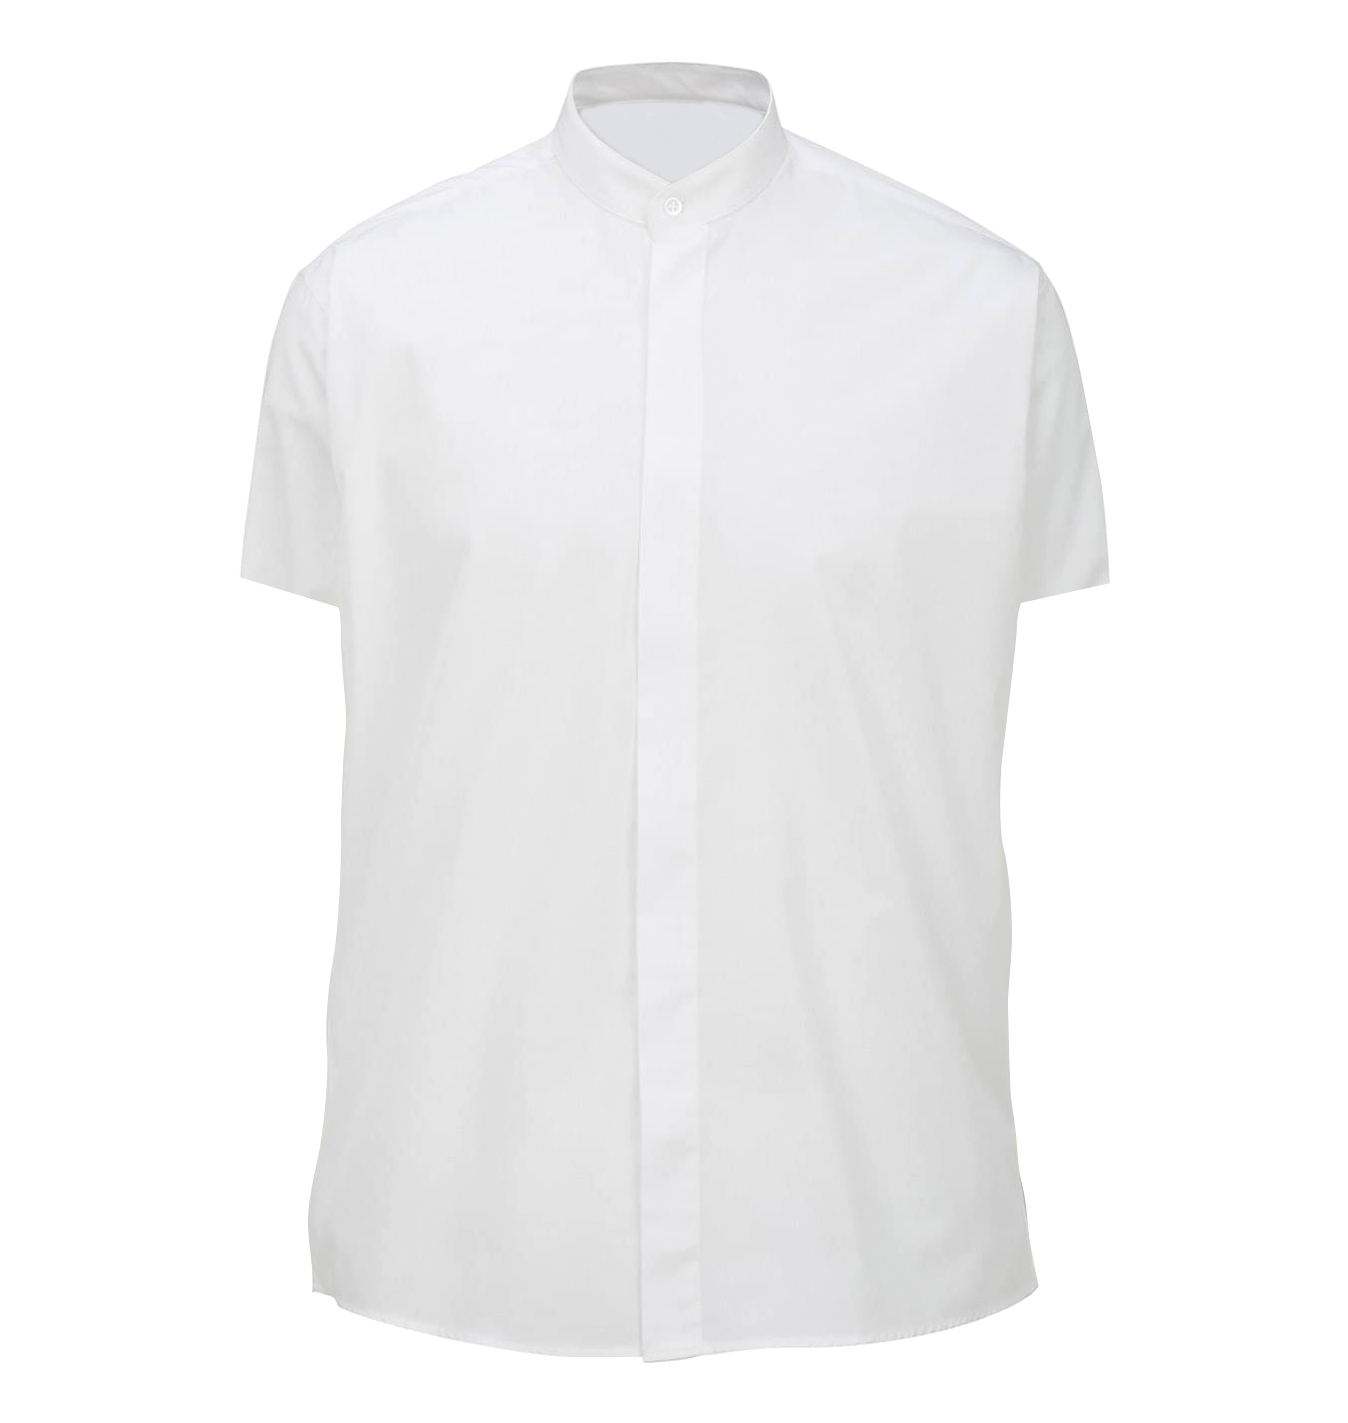 Men's Banded Collar Short-Sleeve Shirt, White